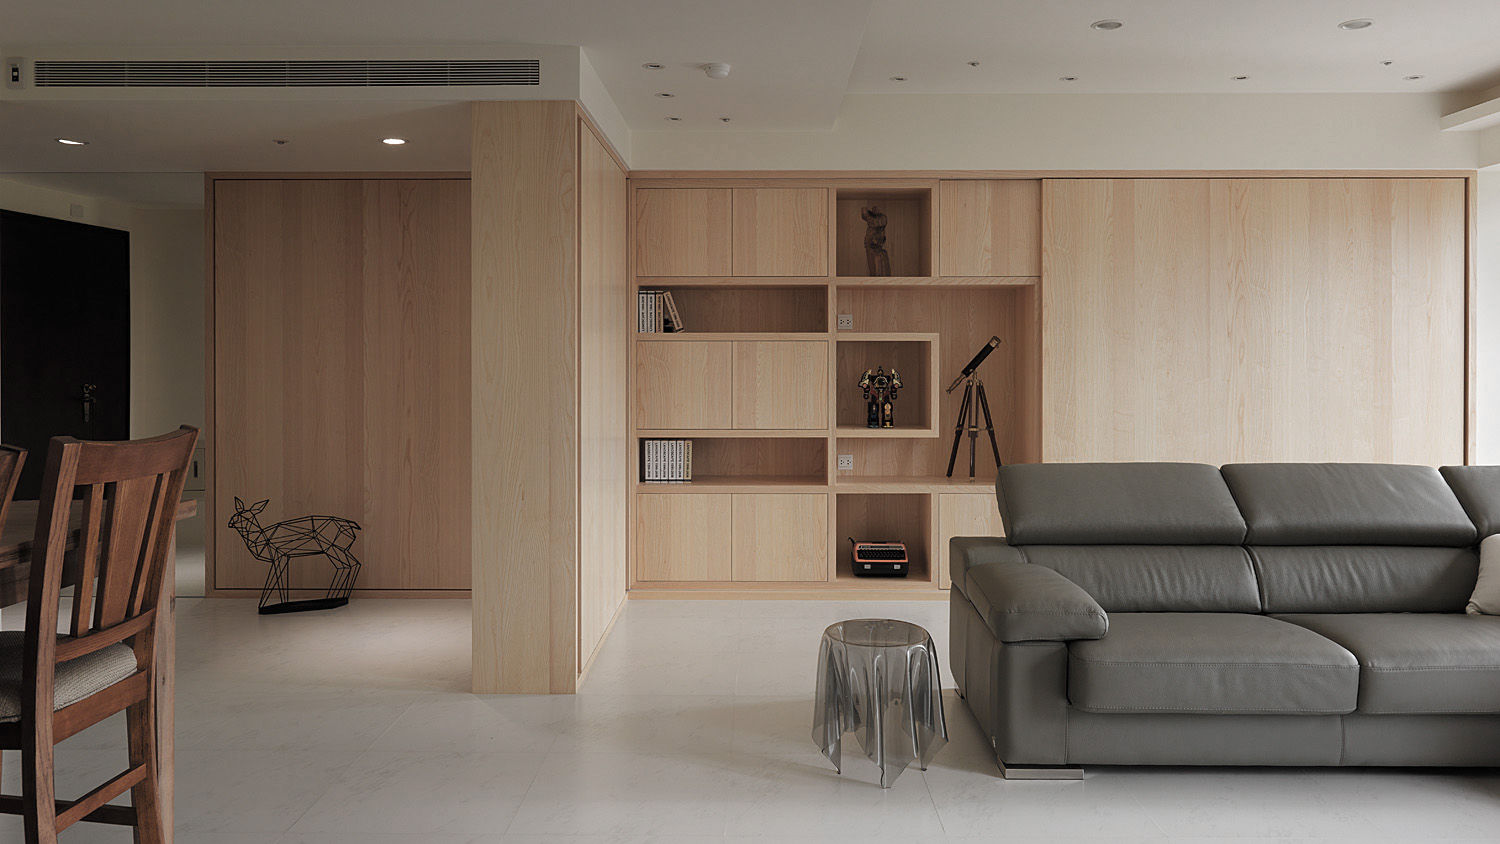 昇陽之道_暖木, 形構設計 Morpho-Design 形構設計 Morpho-Design Salas de estar modernas